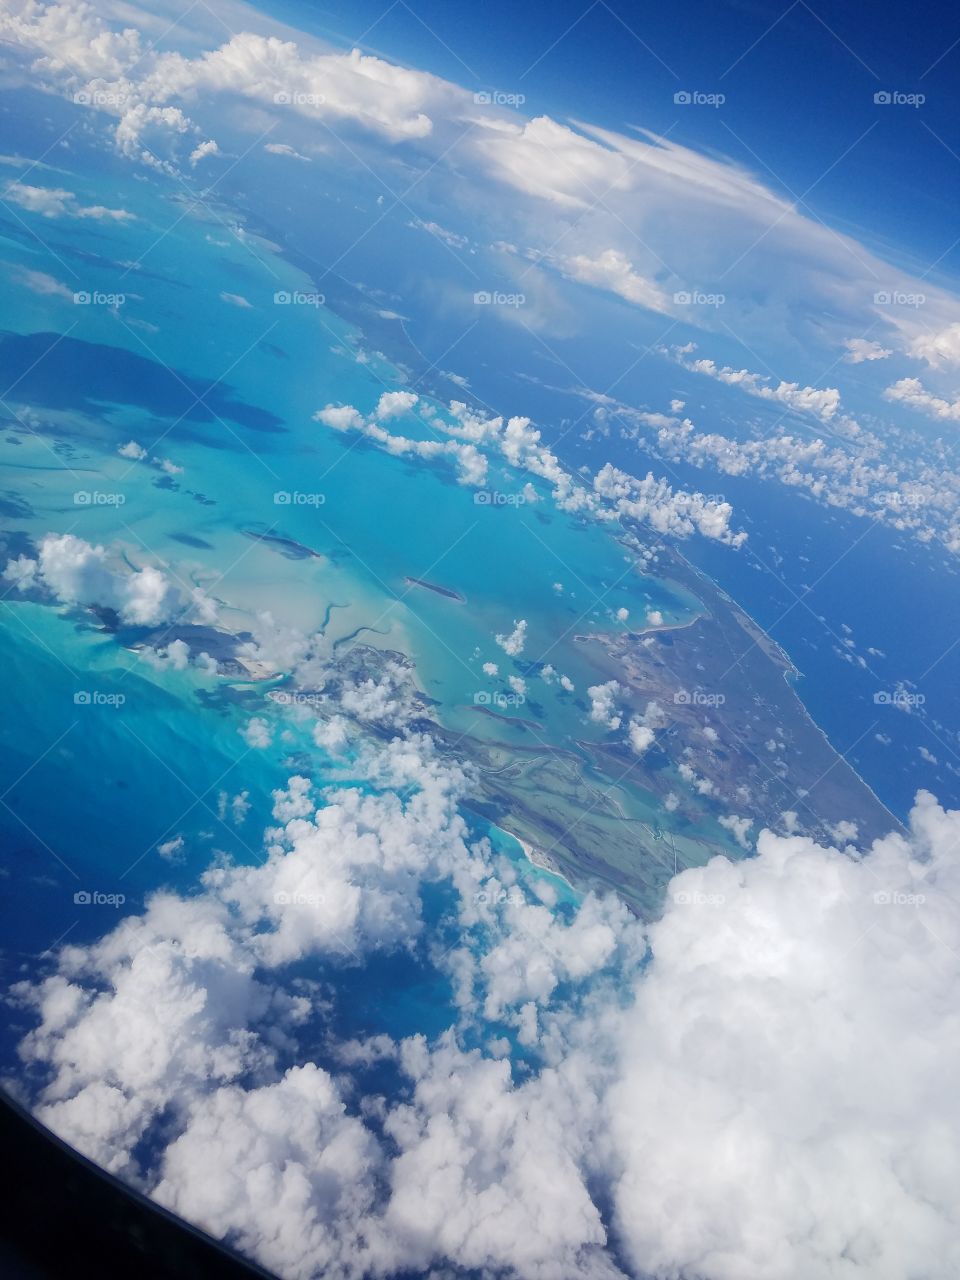 Florida Keys from 30k feet